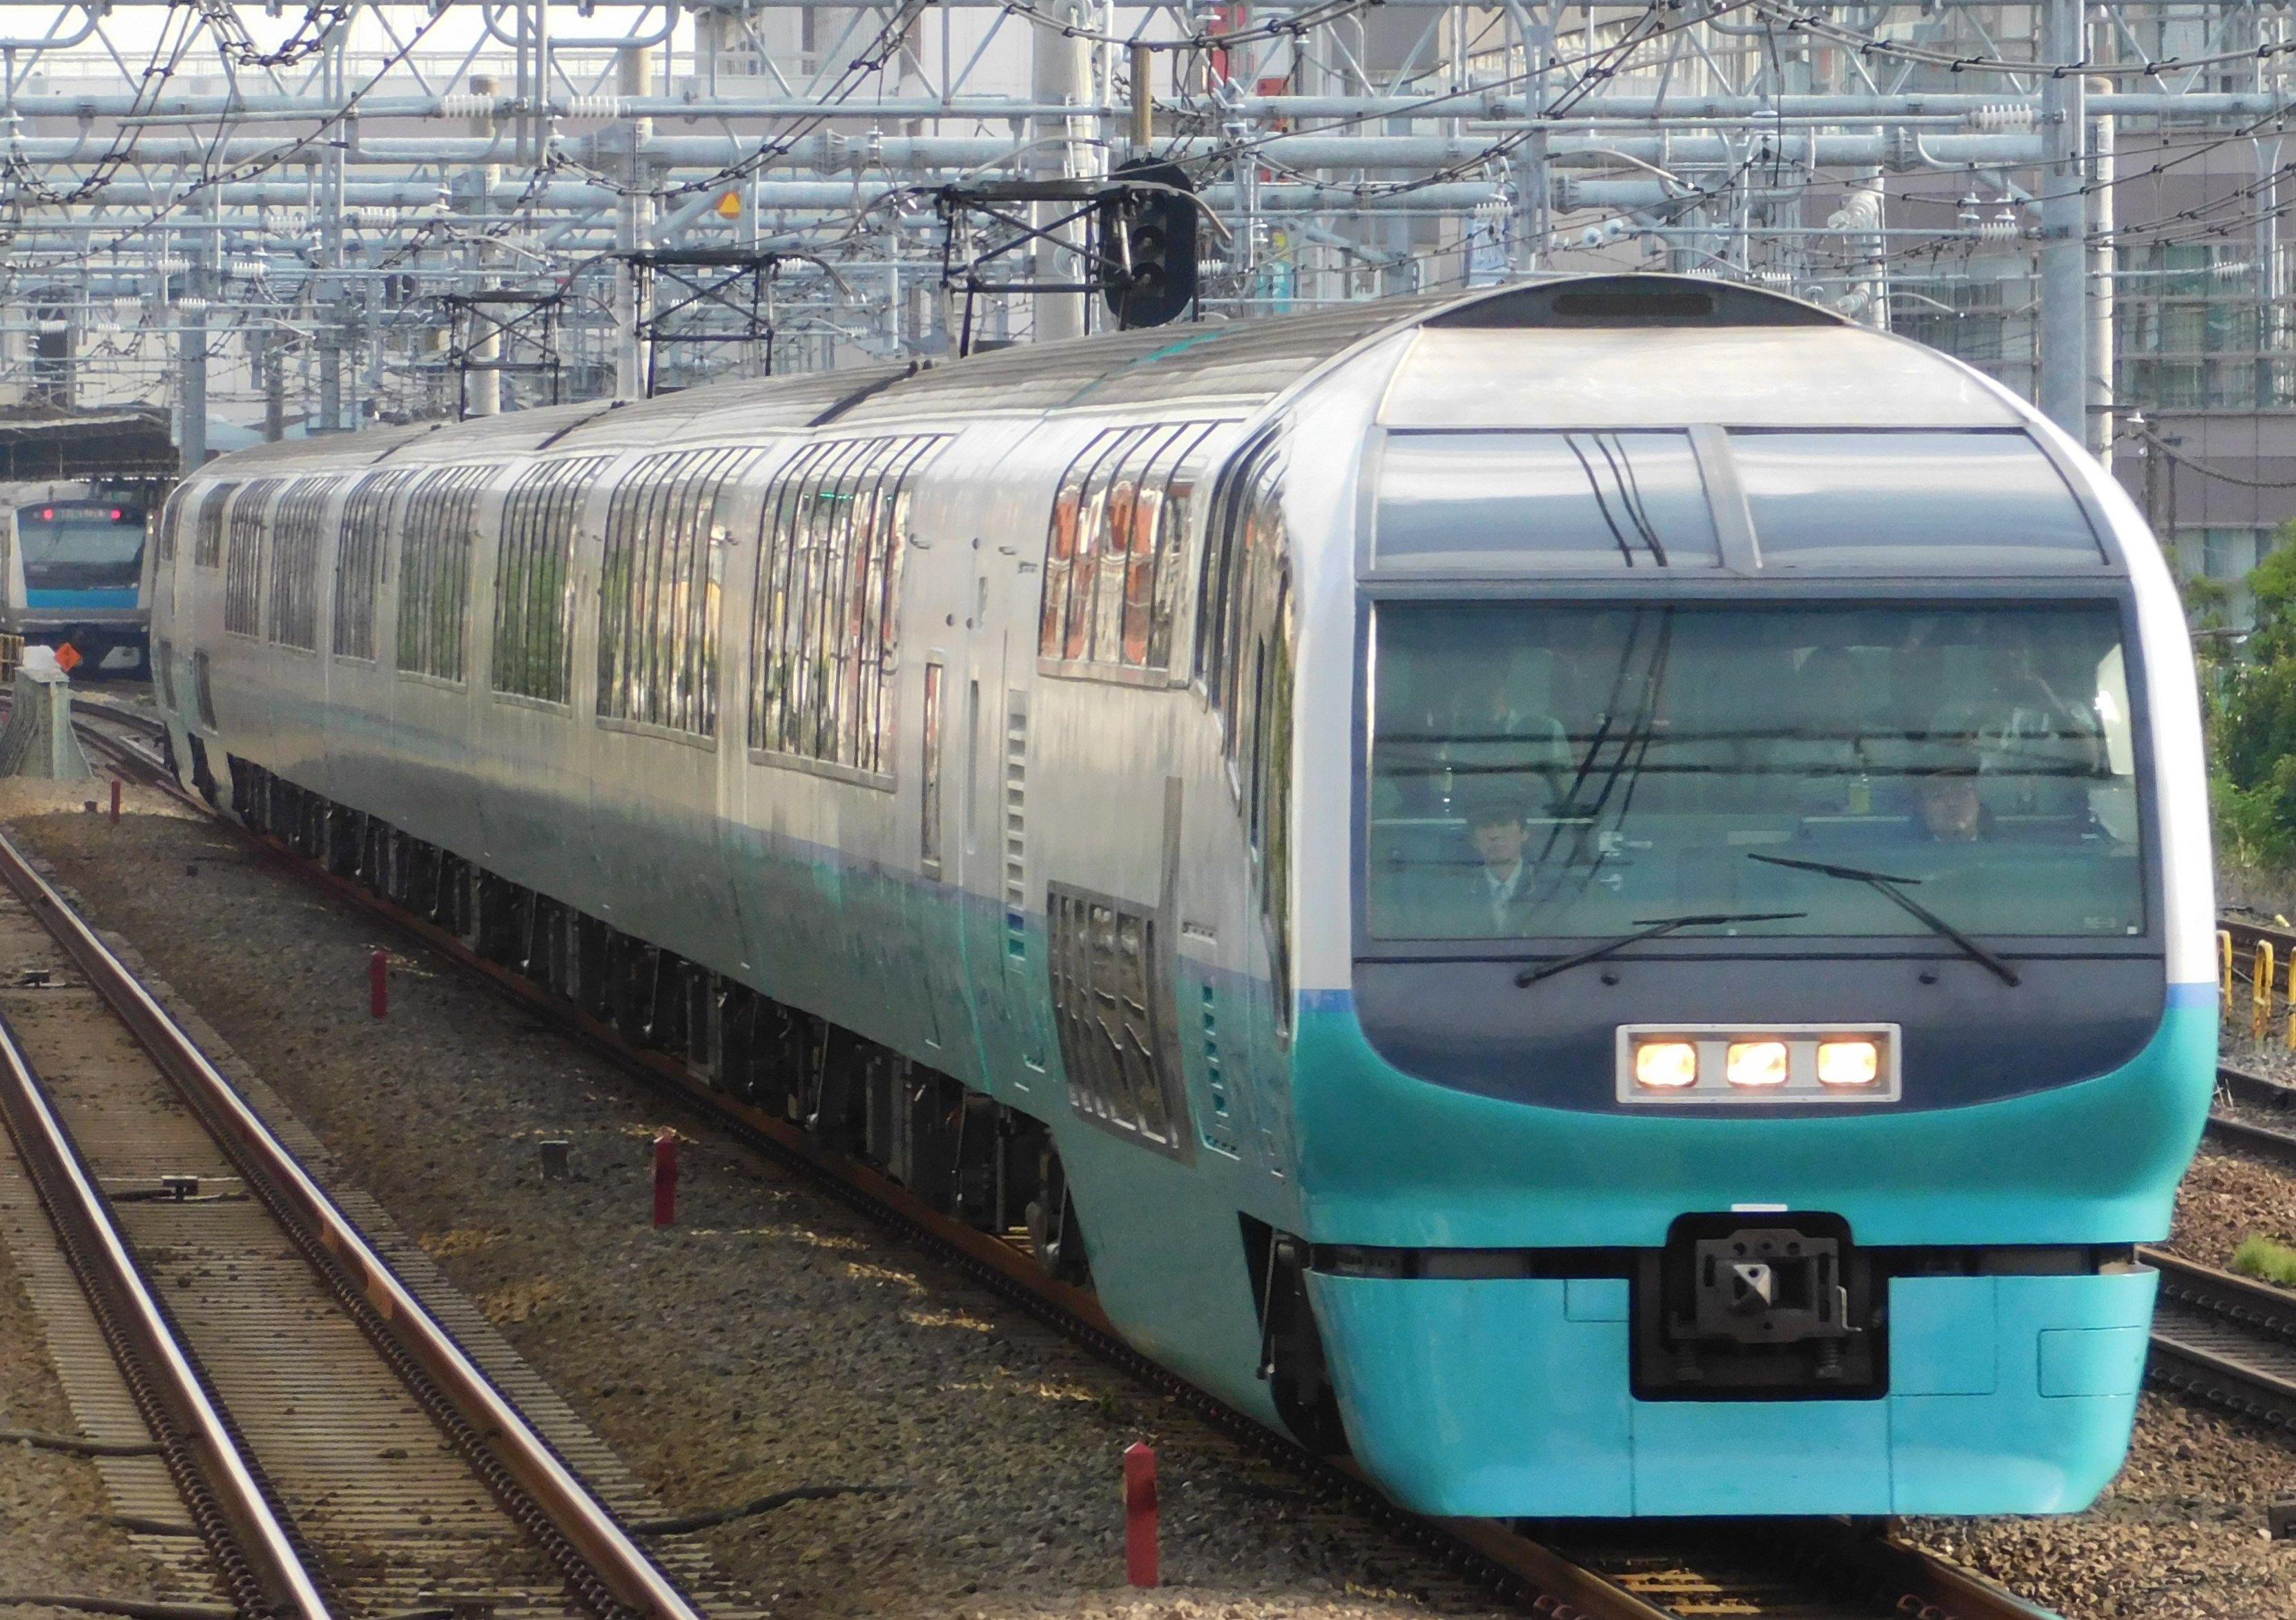 再来年で運行終了になる 特急スーパービュー踊り子251系電車 Arakazu1554のブログ 楽天ブログ